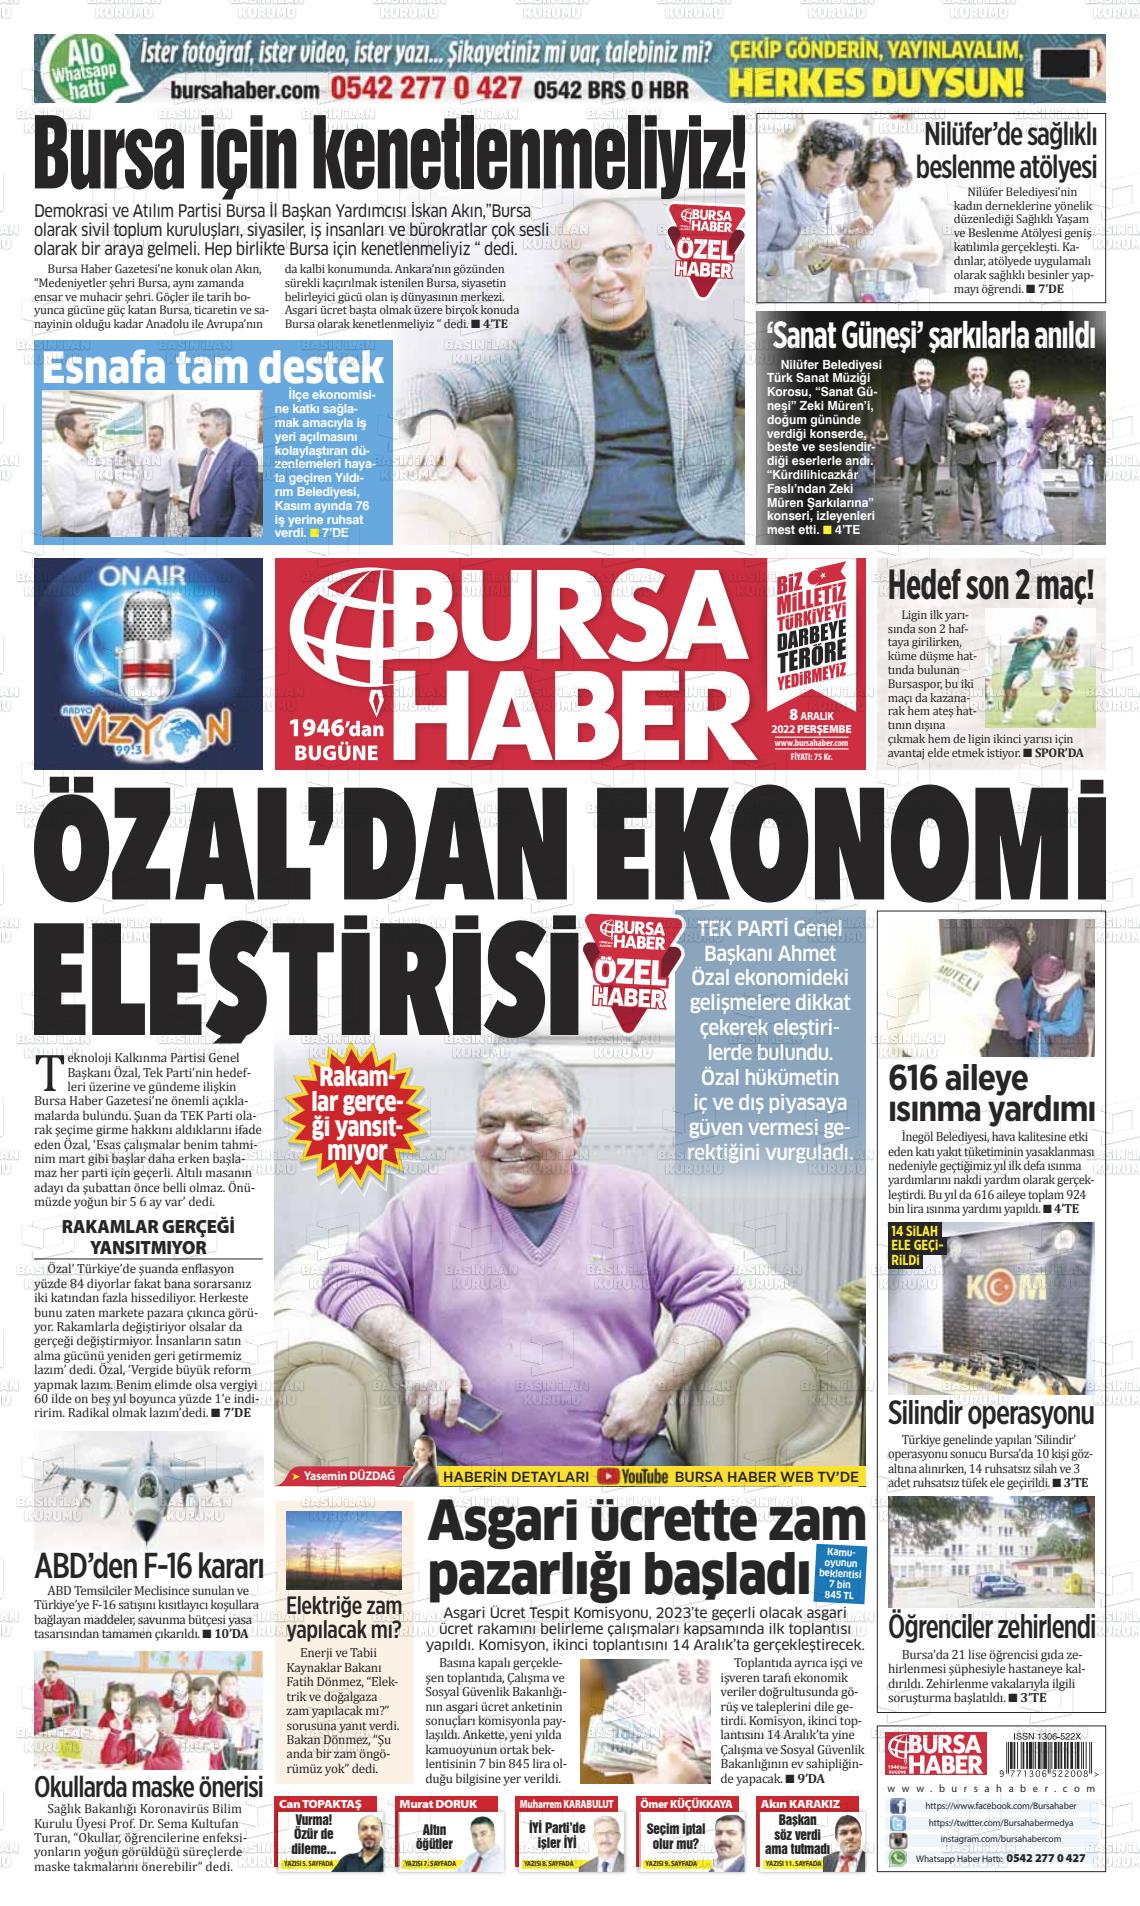 08 Aralık 2022 Bursa Haber Gazete Manşeti